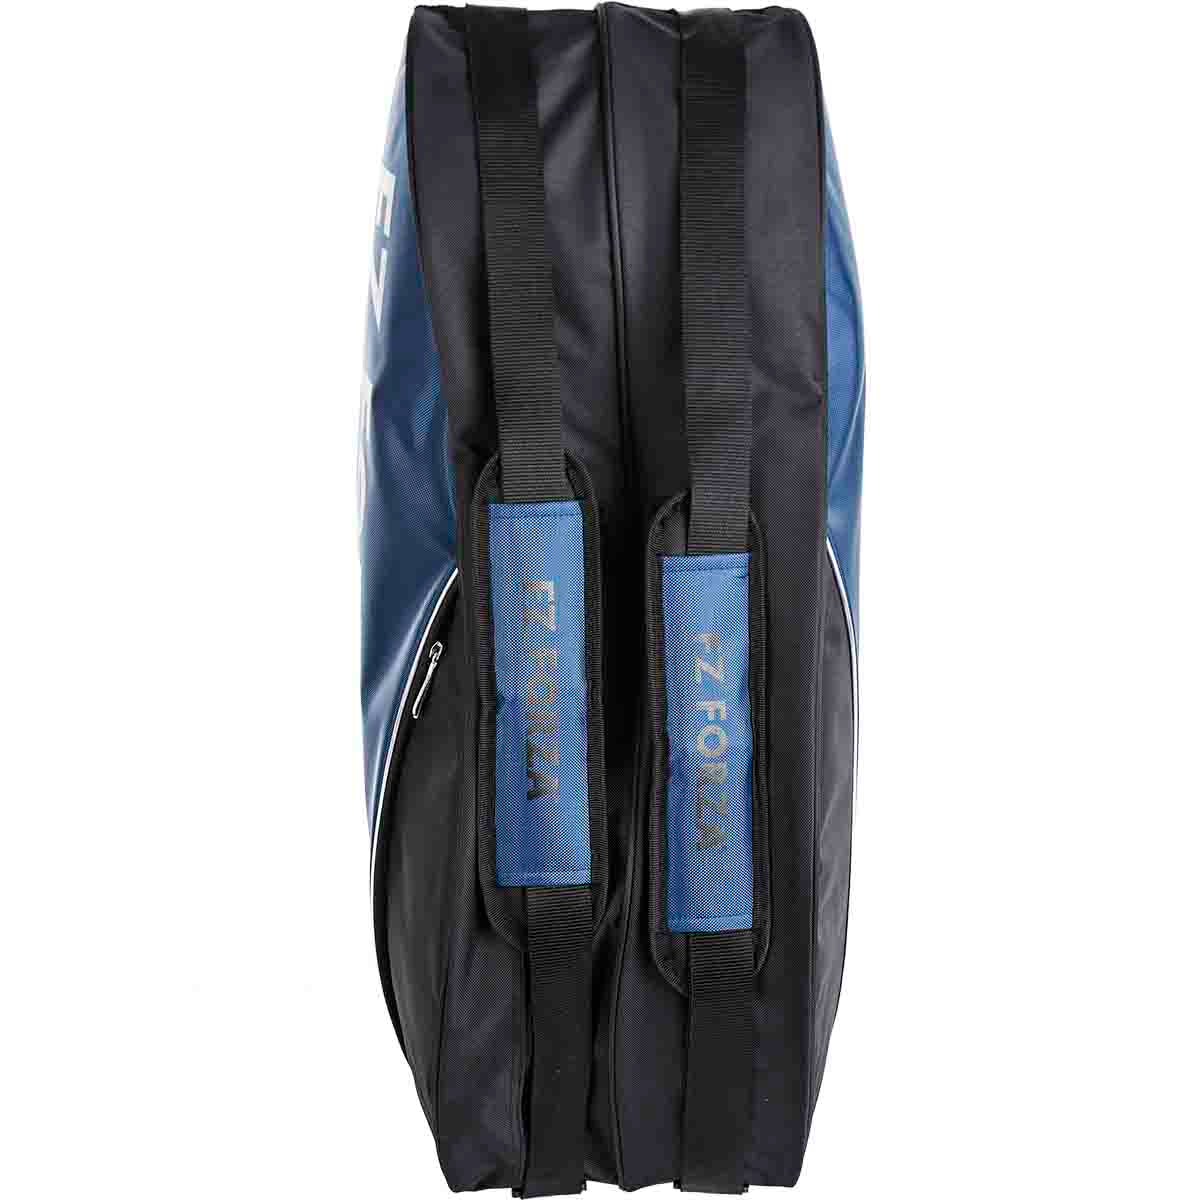 सन्दूक 6 रैकेट बैग (एस्टेट ब्लू)